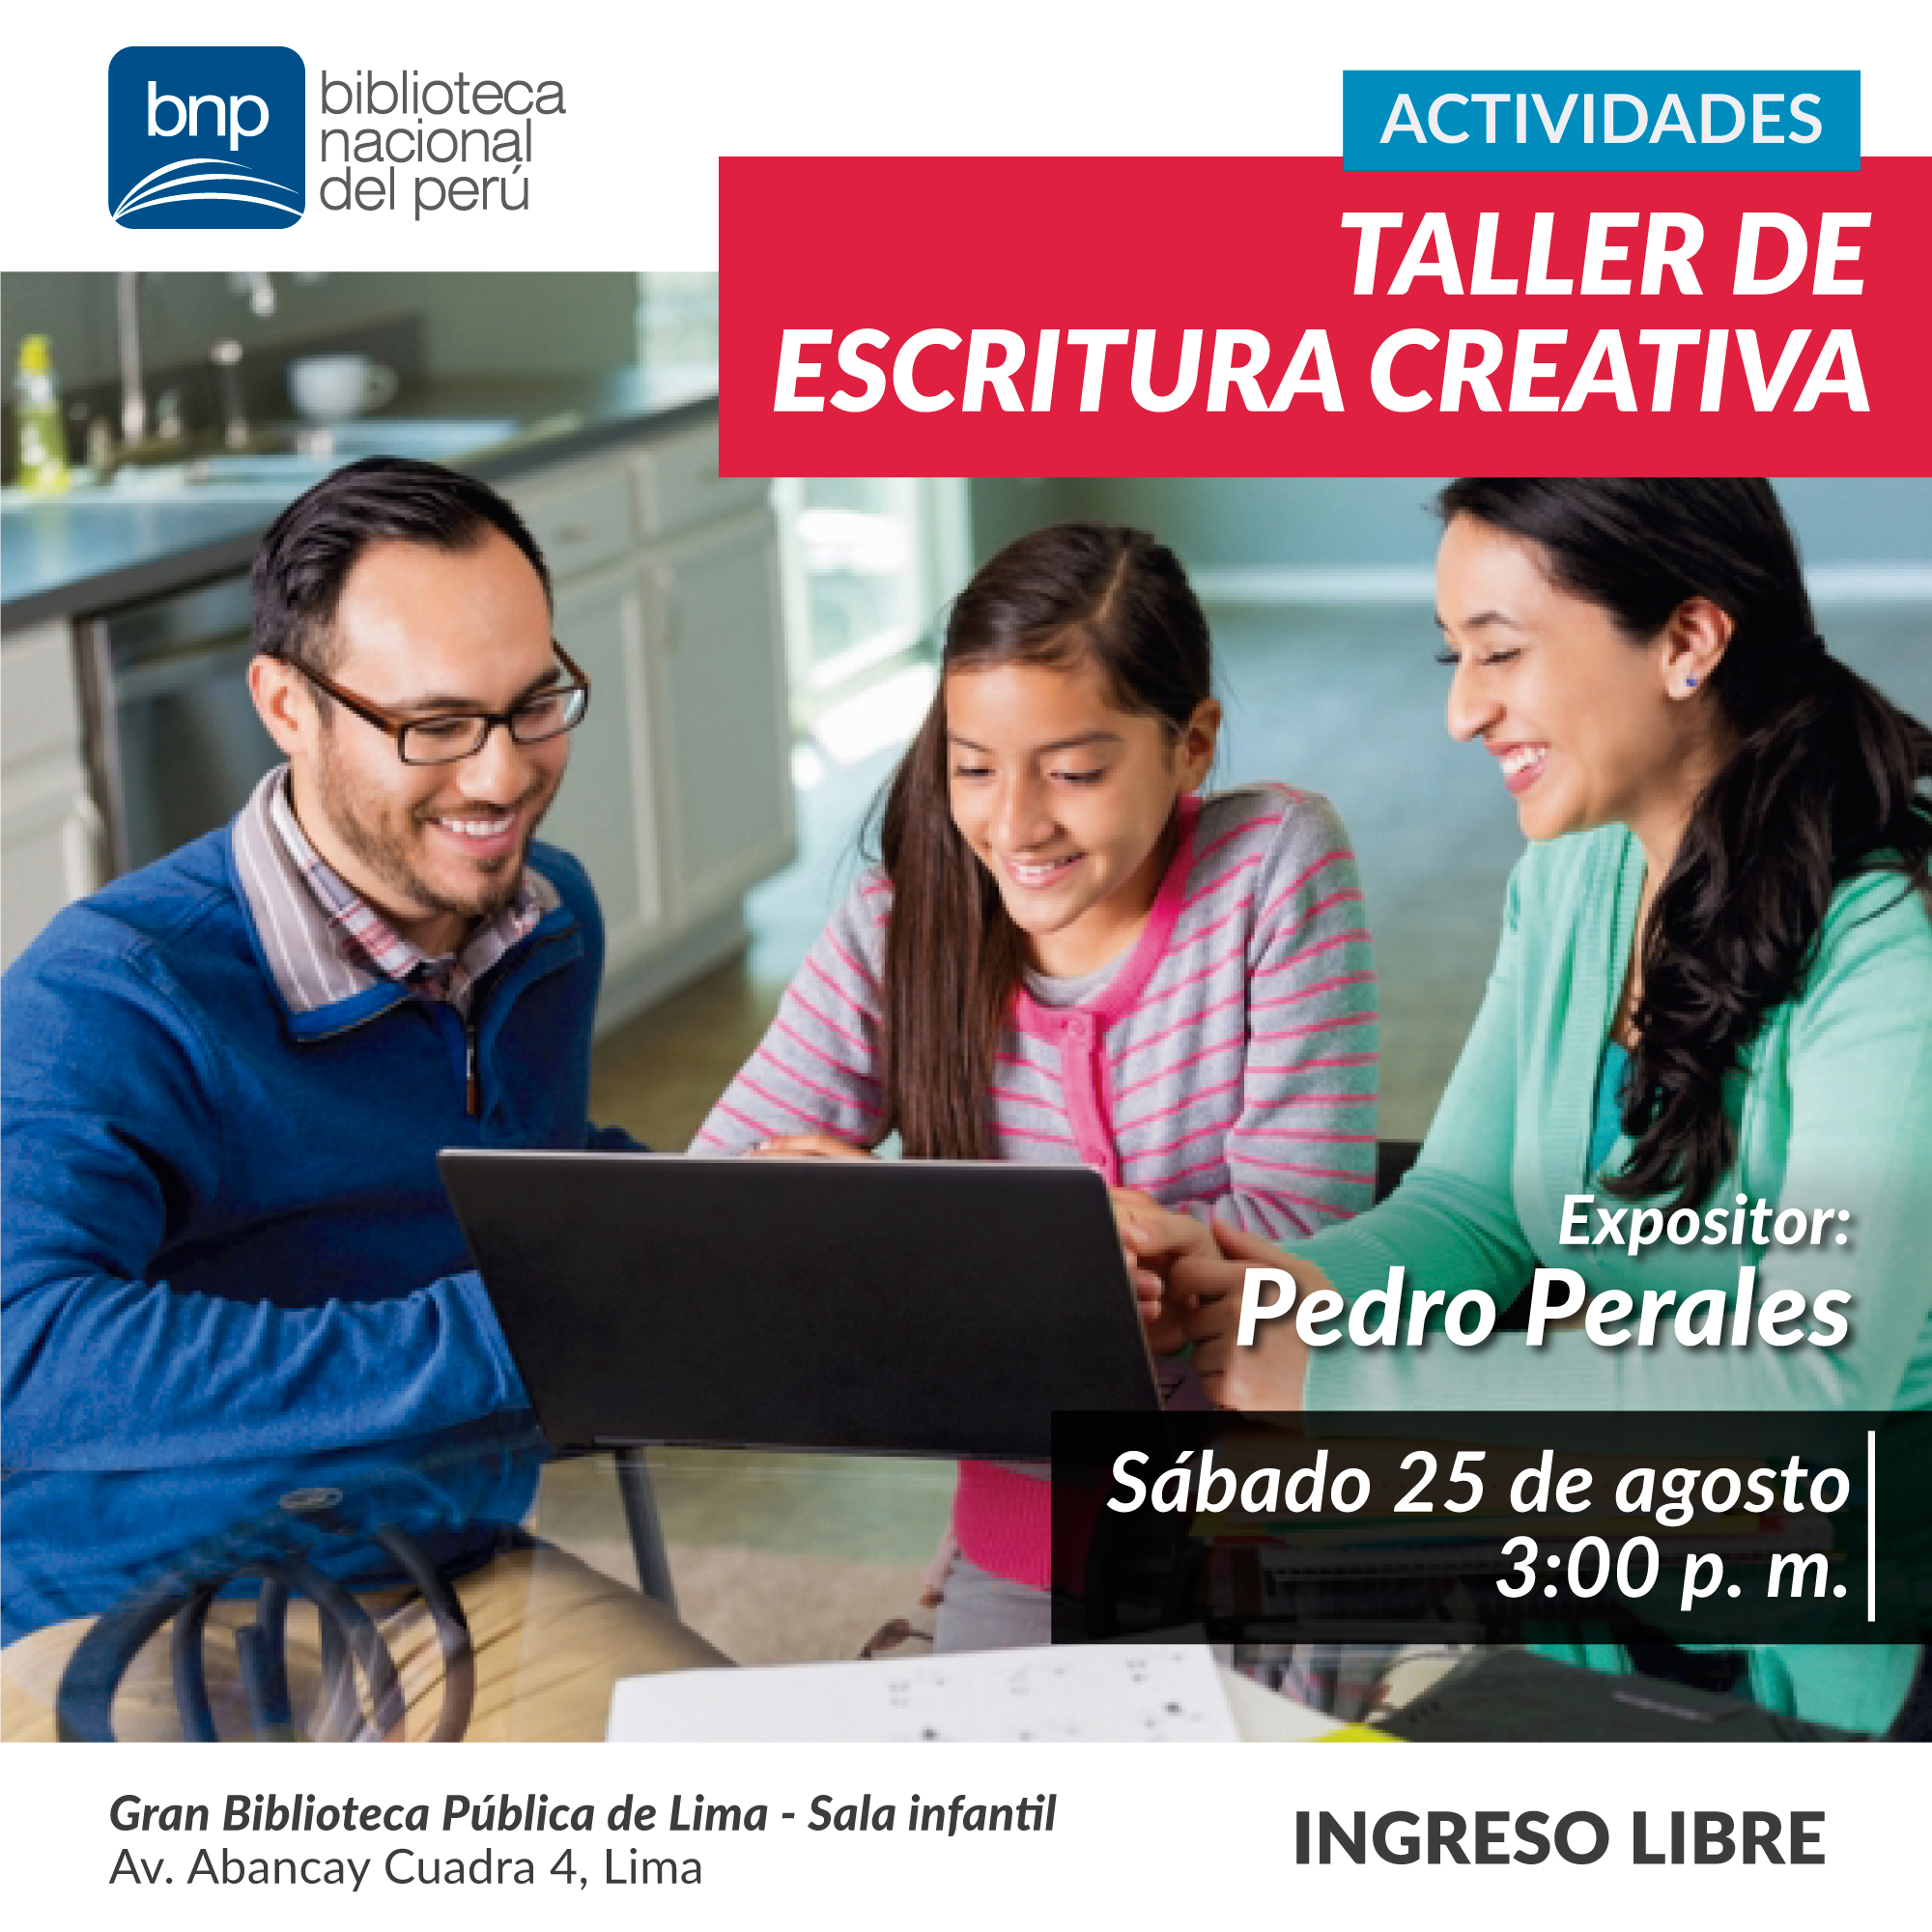 BNP ORGANIZA TALLER DE ESCRITURA CREATIVA | Biblioteca Nacional del Perú |  BNP